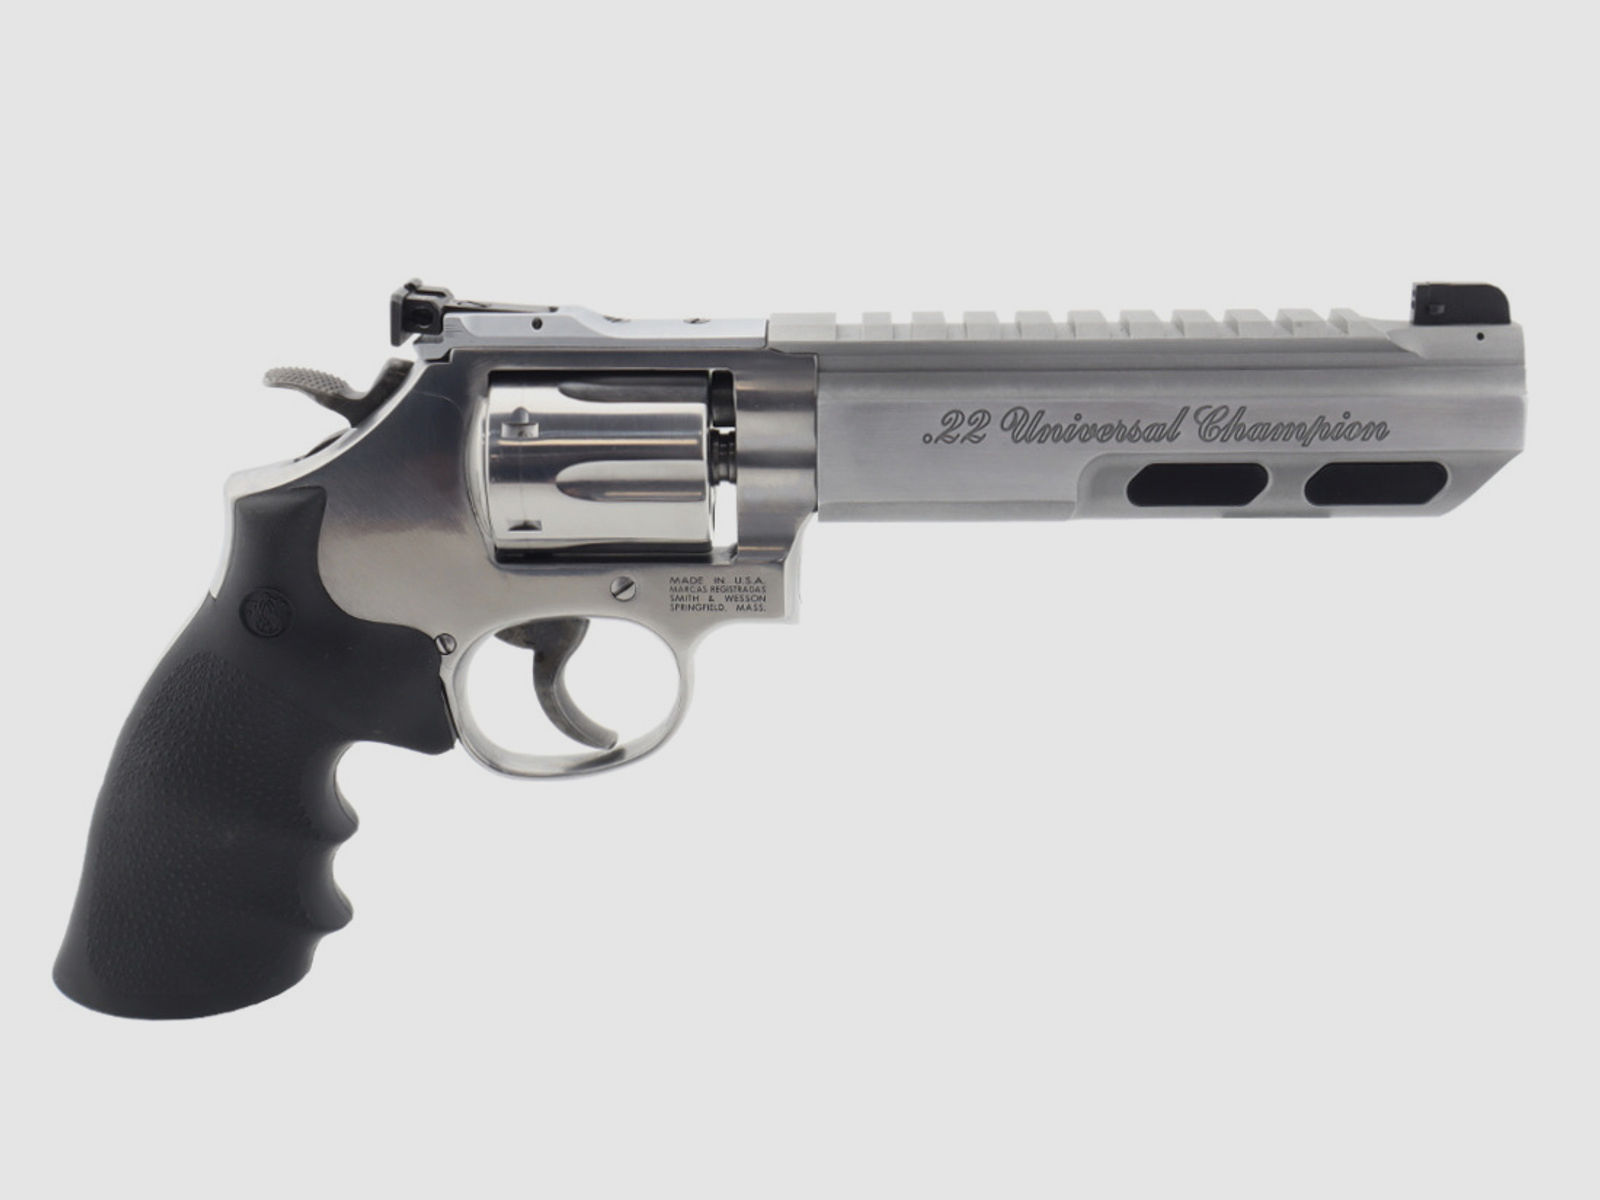  Smith & Wesson  617 Universal Champion S&W Kleinkaliber Revolver KK